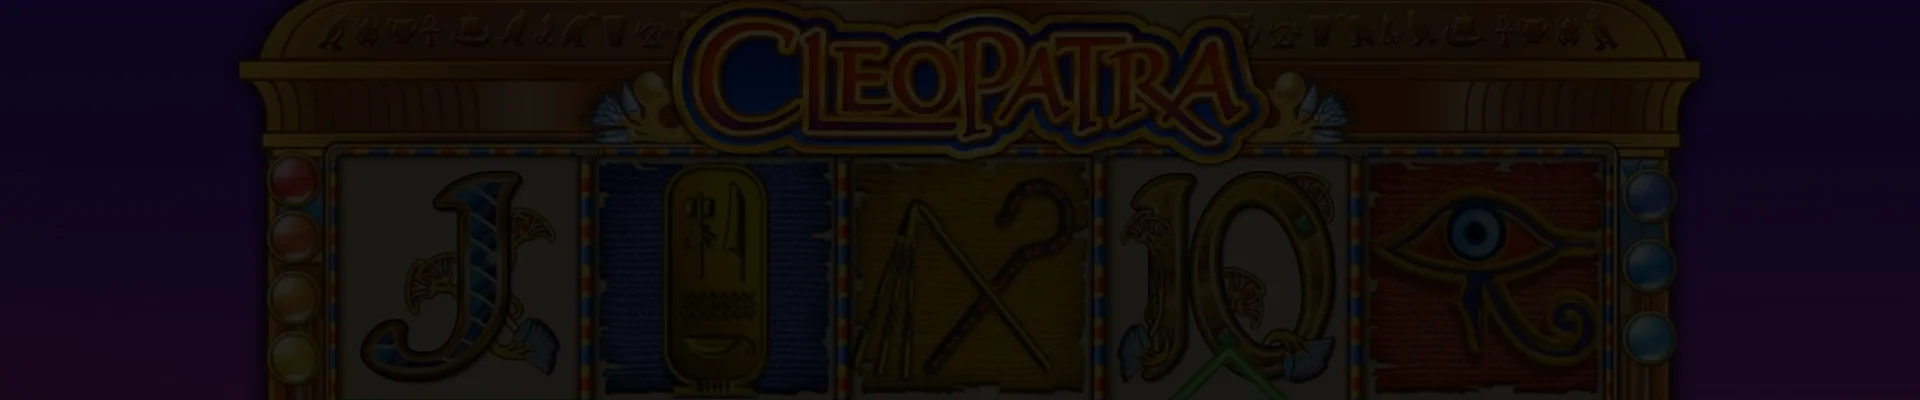 cleopatra background image